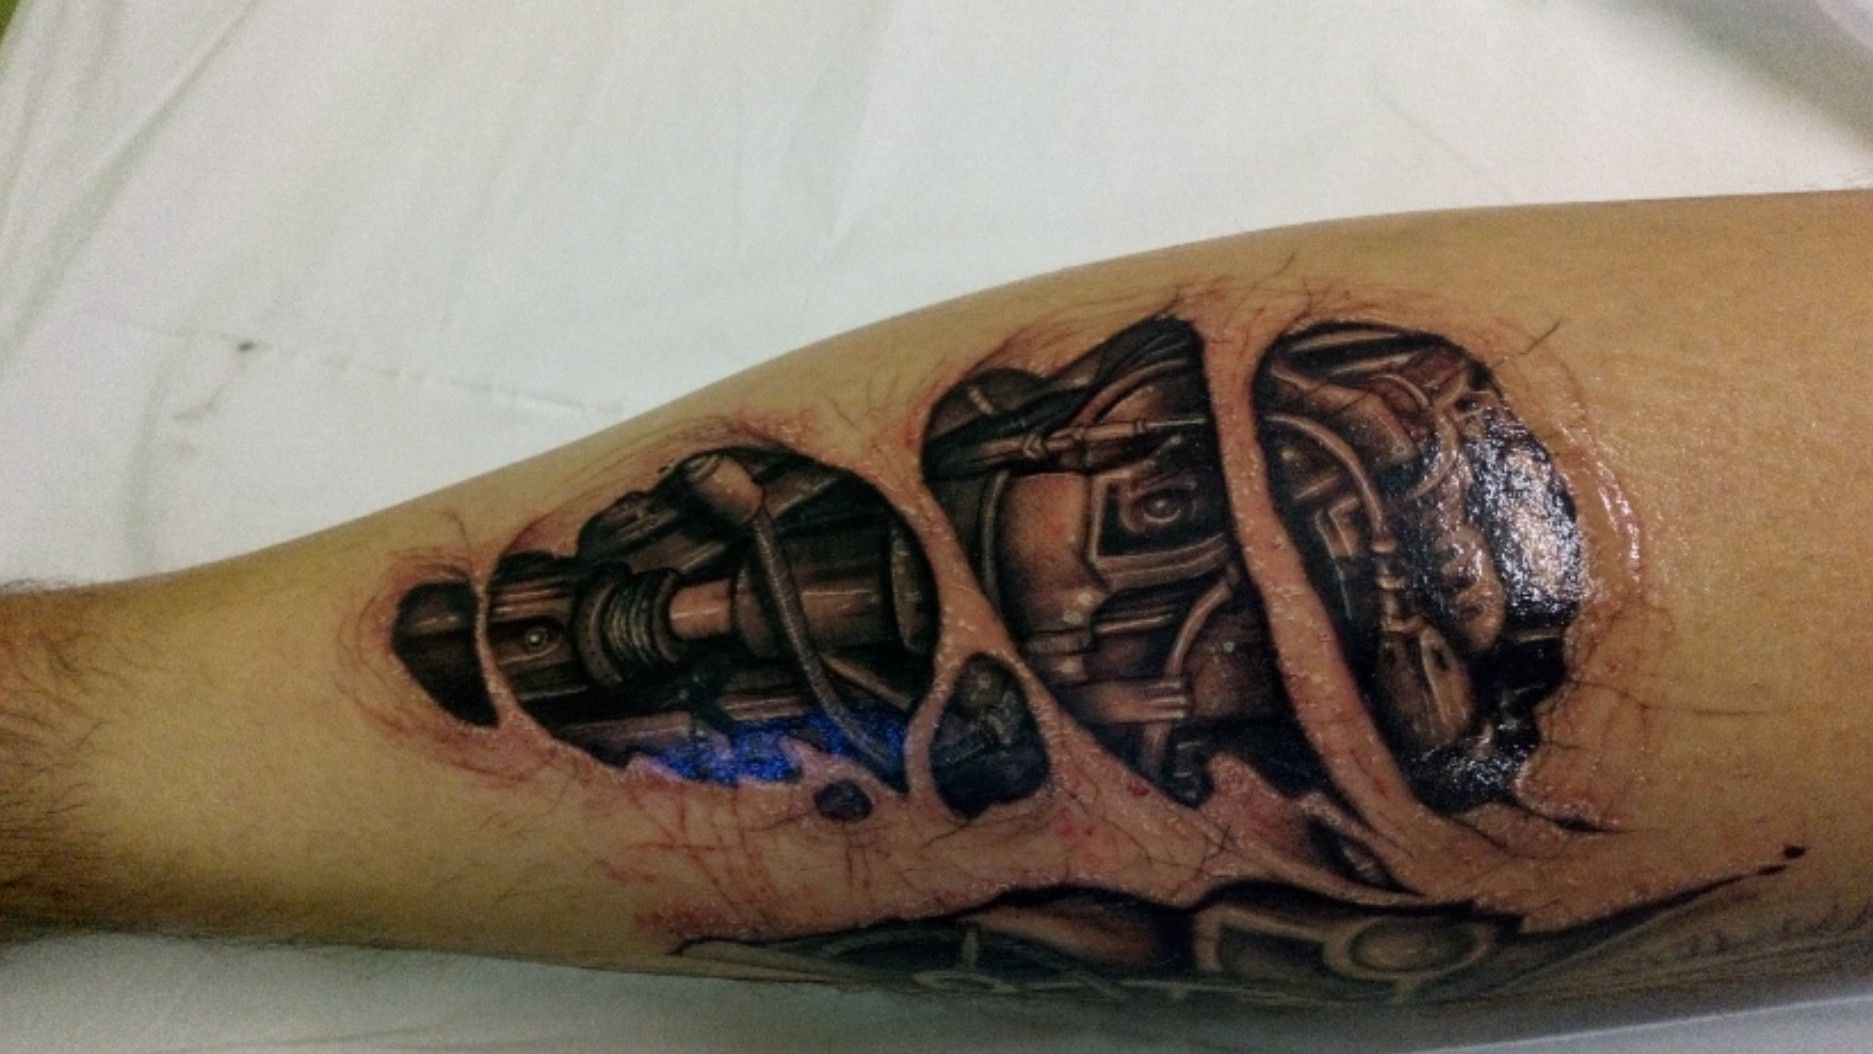 Bionic Arm Tattoo  Tattoo for a week